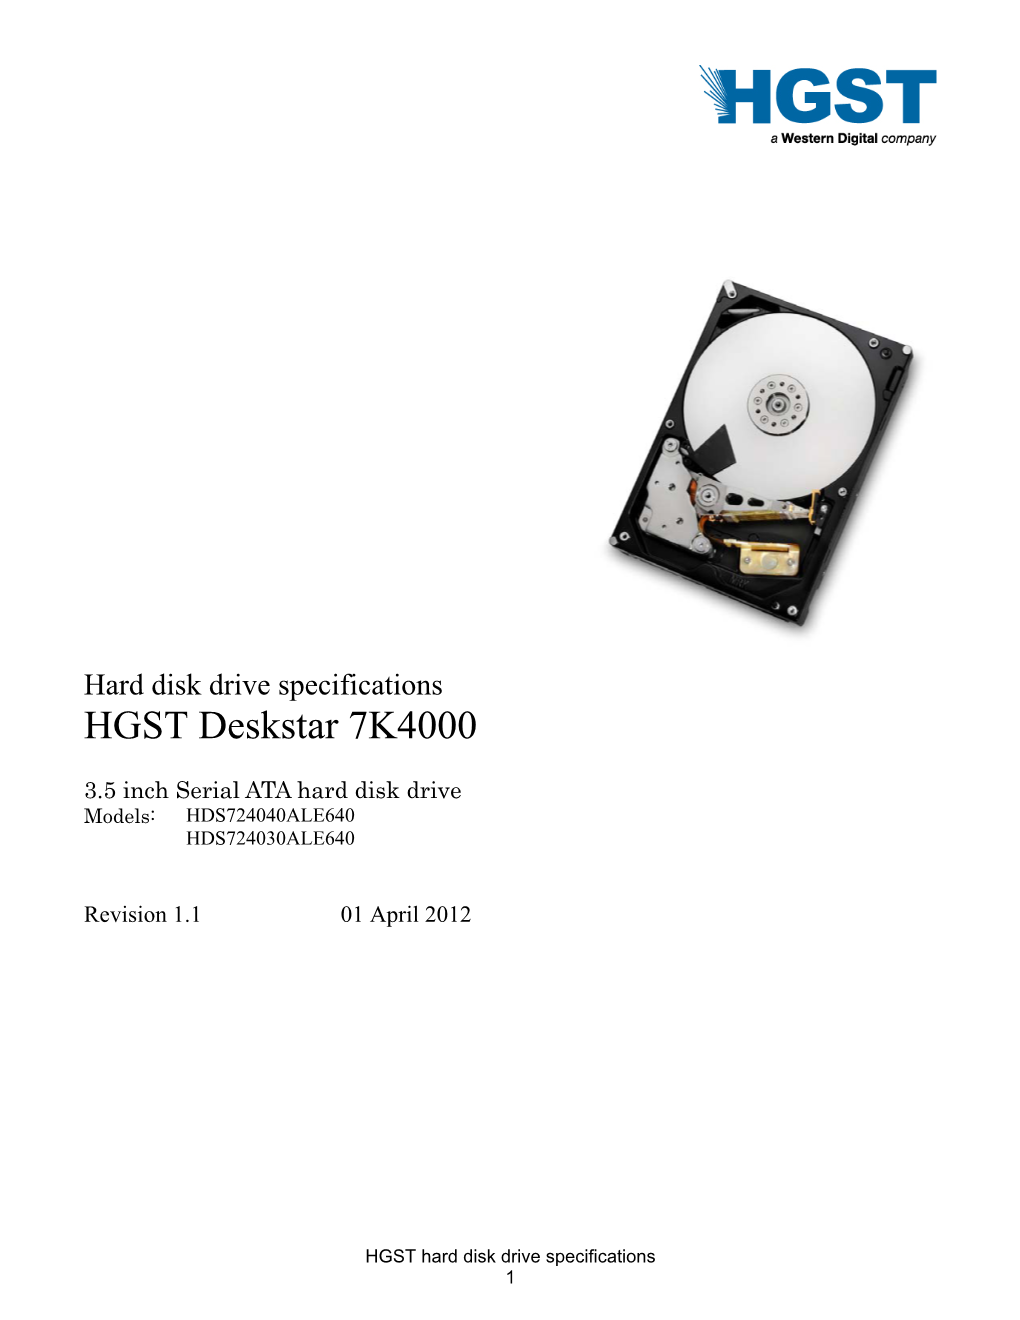 Hard Disk Drive Specifications HGST Deskstar 7K4000